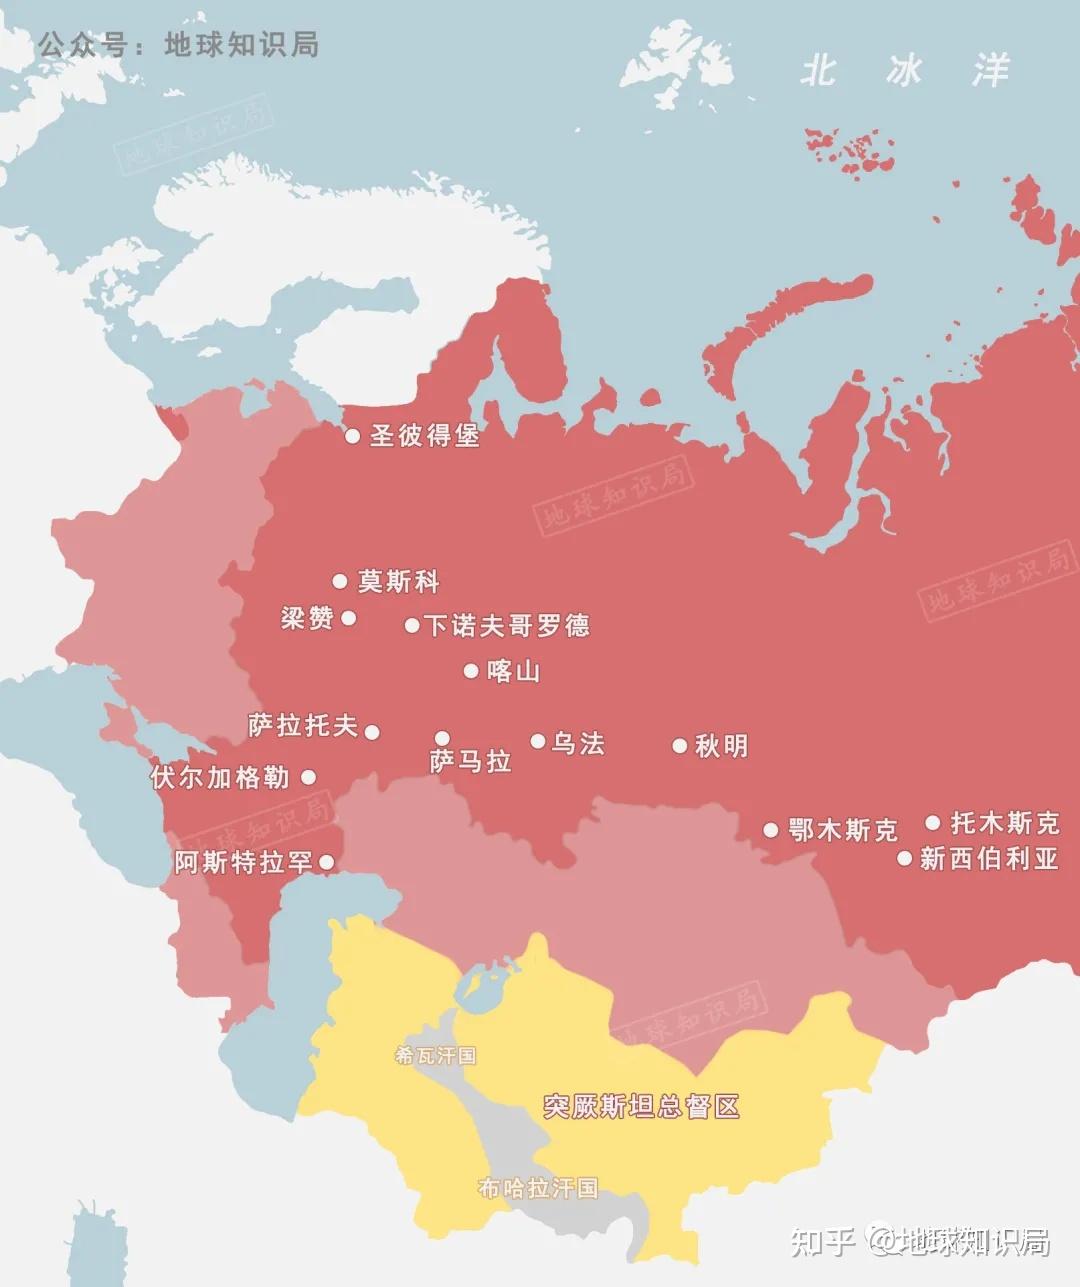 俄罗斯凭什么可以征服众多北亚战斗游牧民族和一些中亚游牧民族